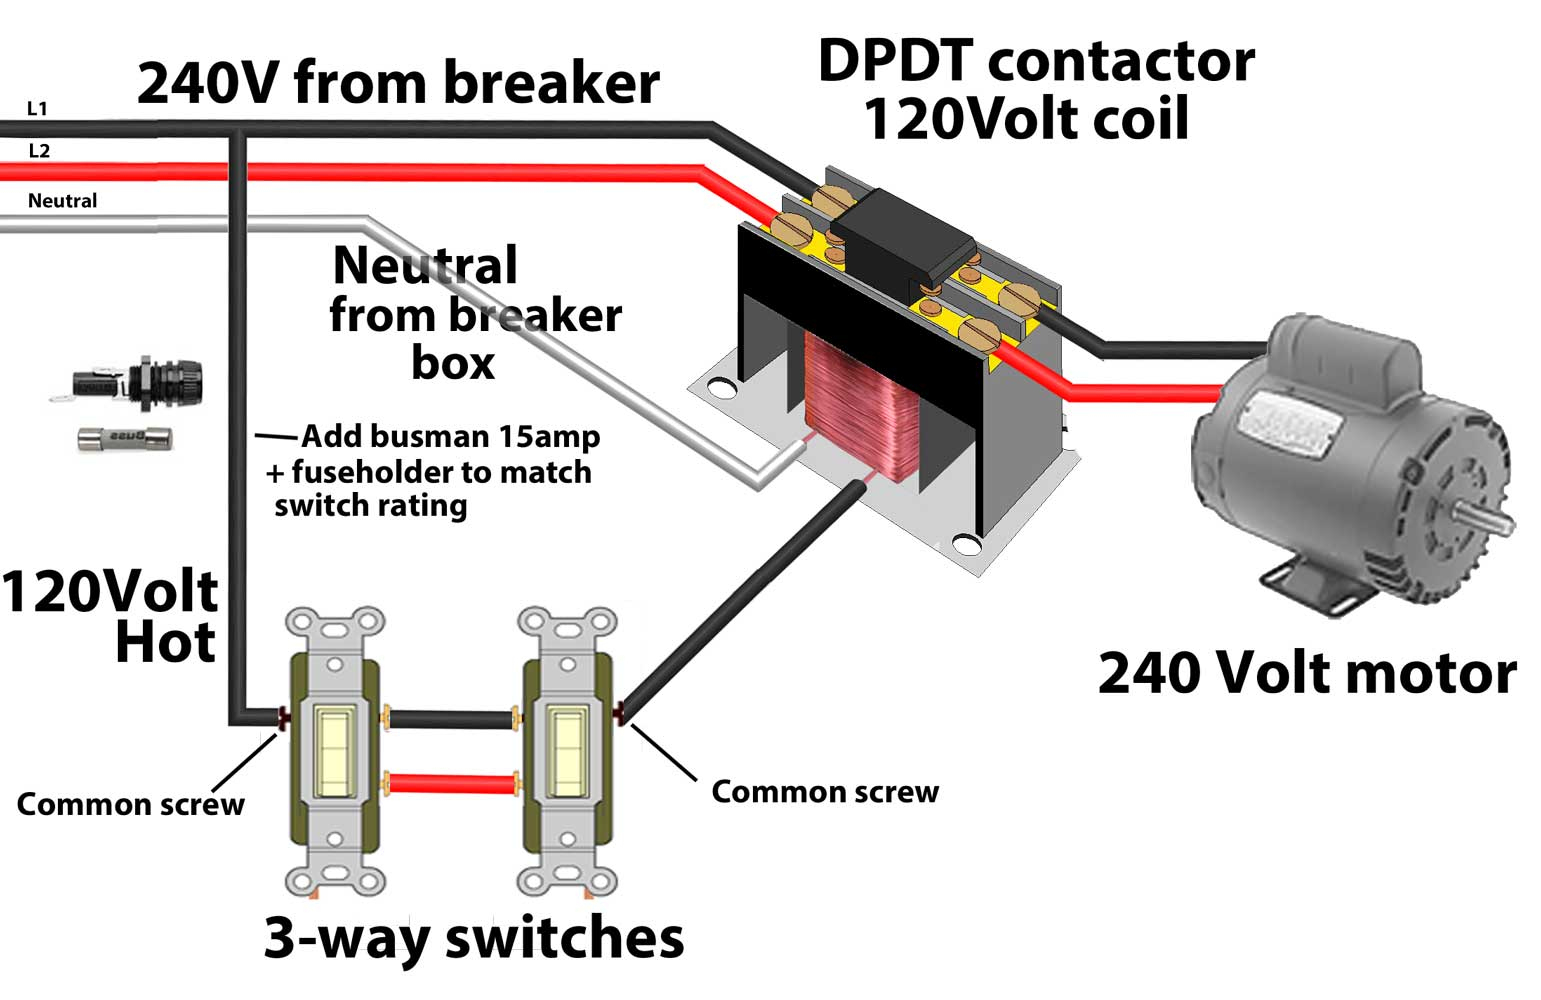 Contactors - 240 Volt Contactor Wiring Diagram